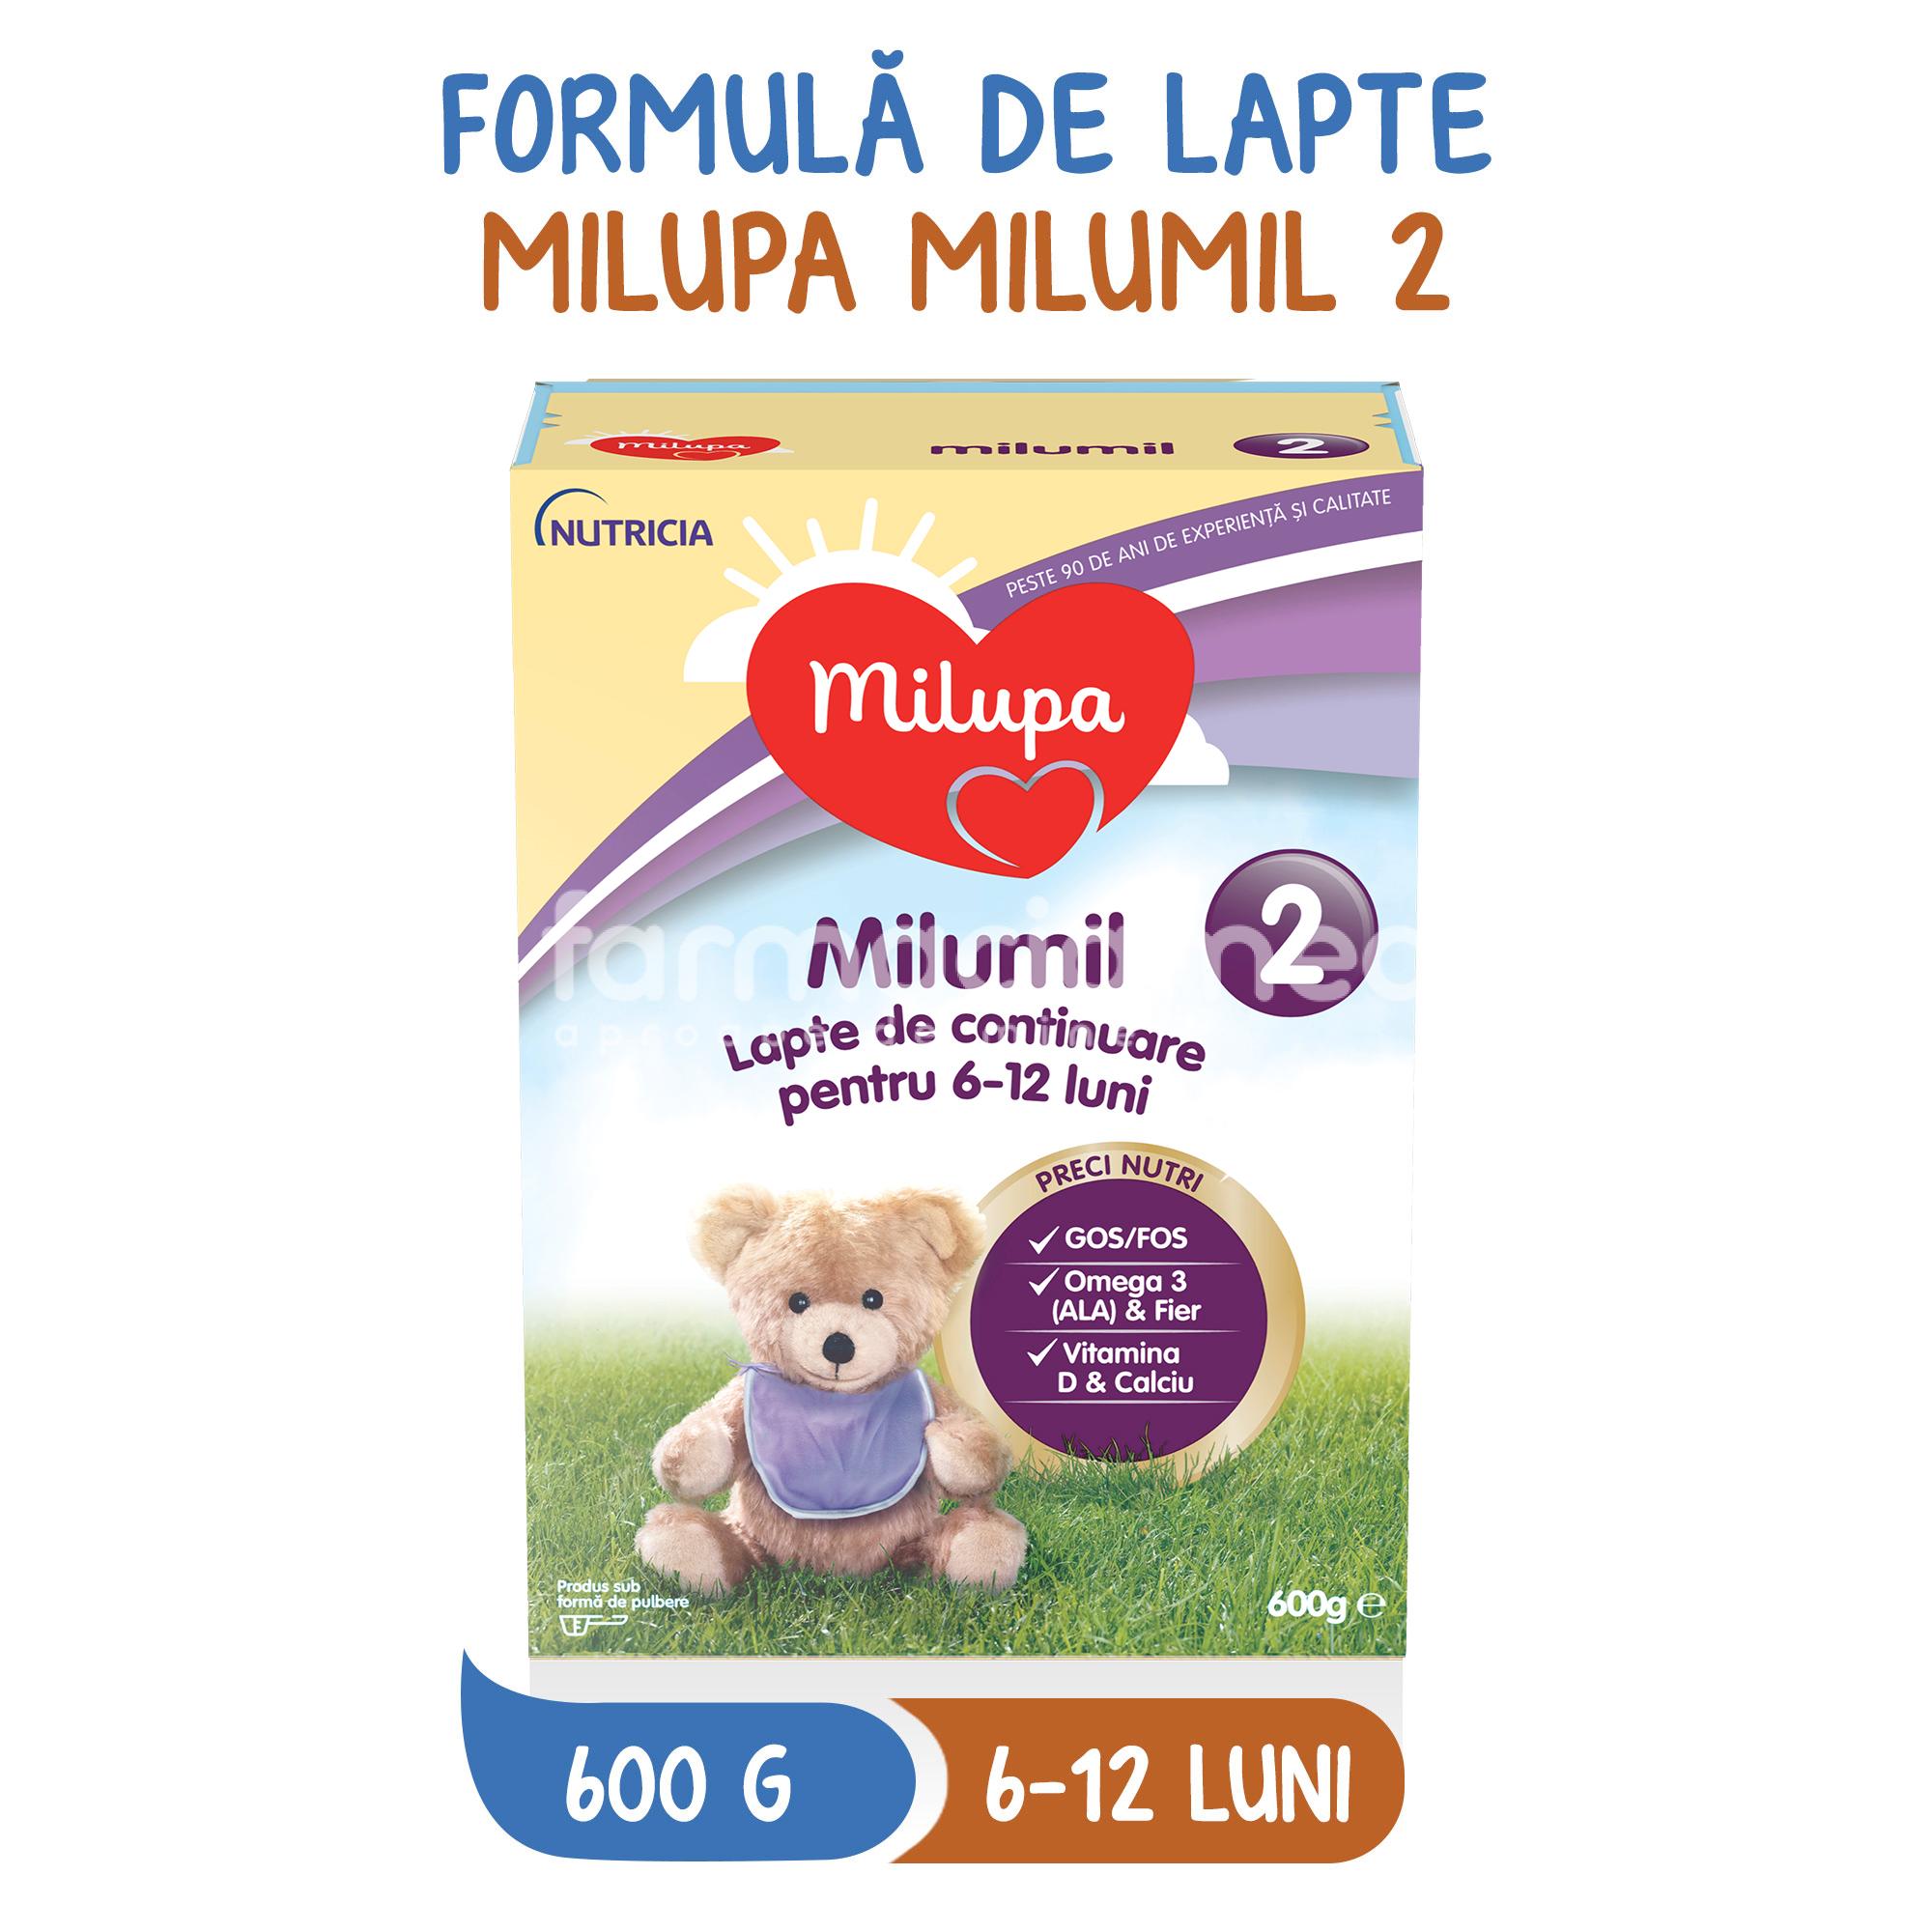 Lapte praf - Milumil 2 lapte praf, de la 6 luni, 600 g, Milupa, farmaciamea.ro